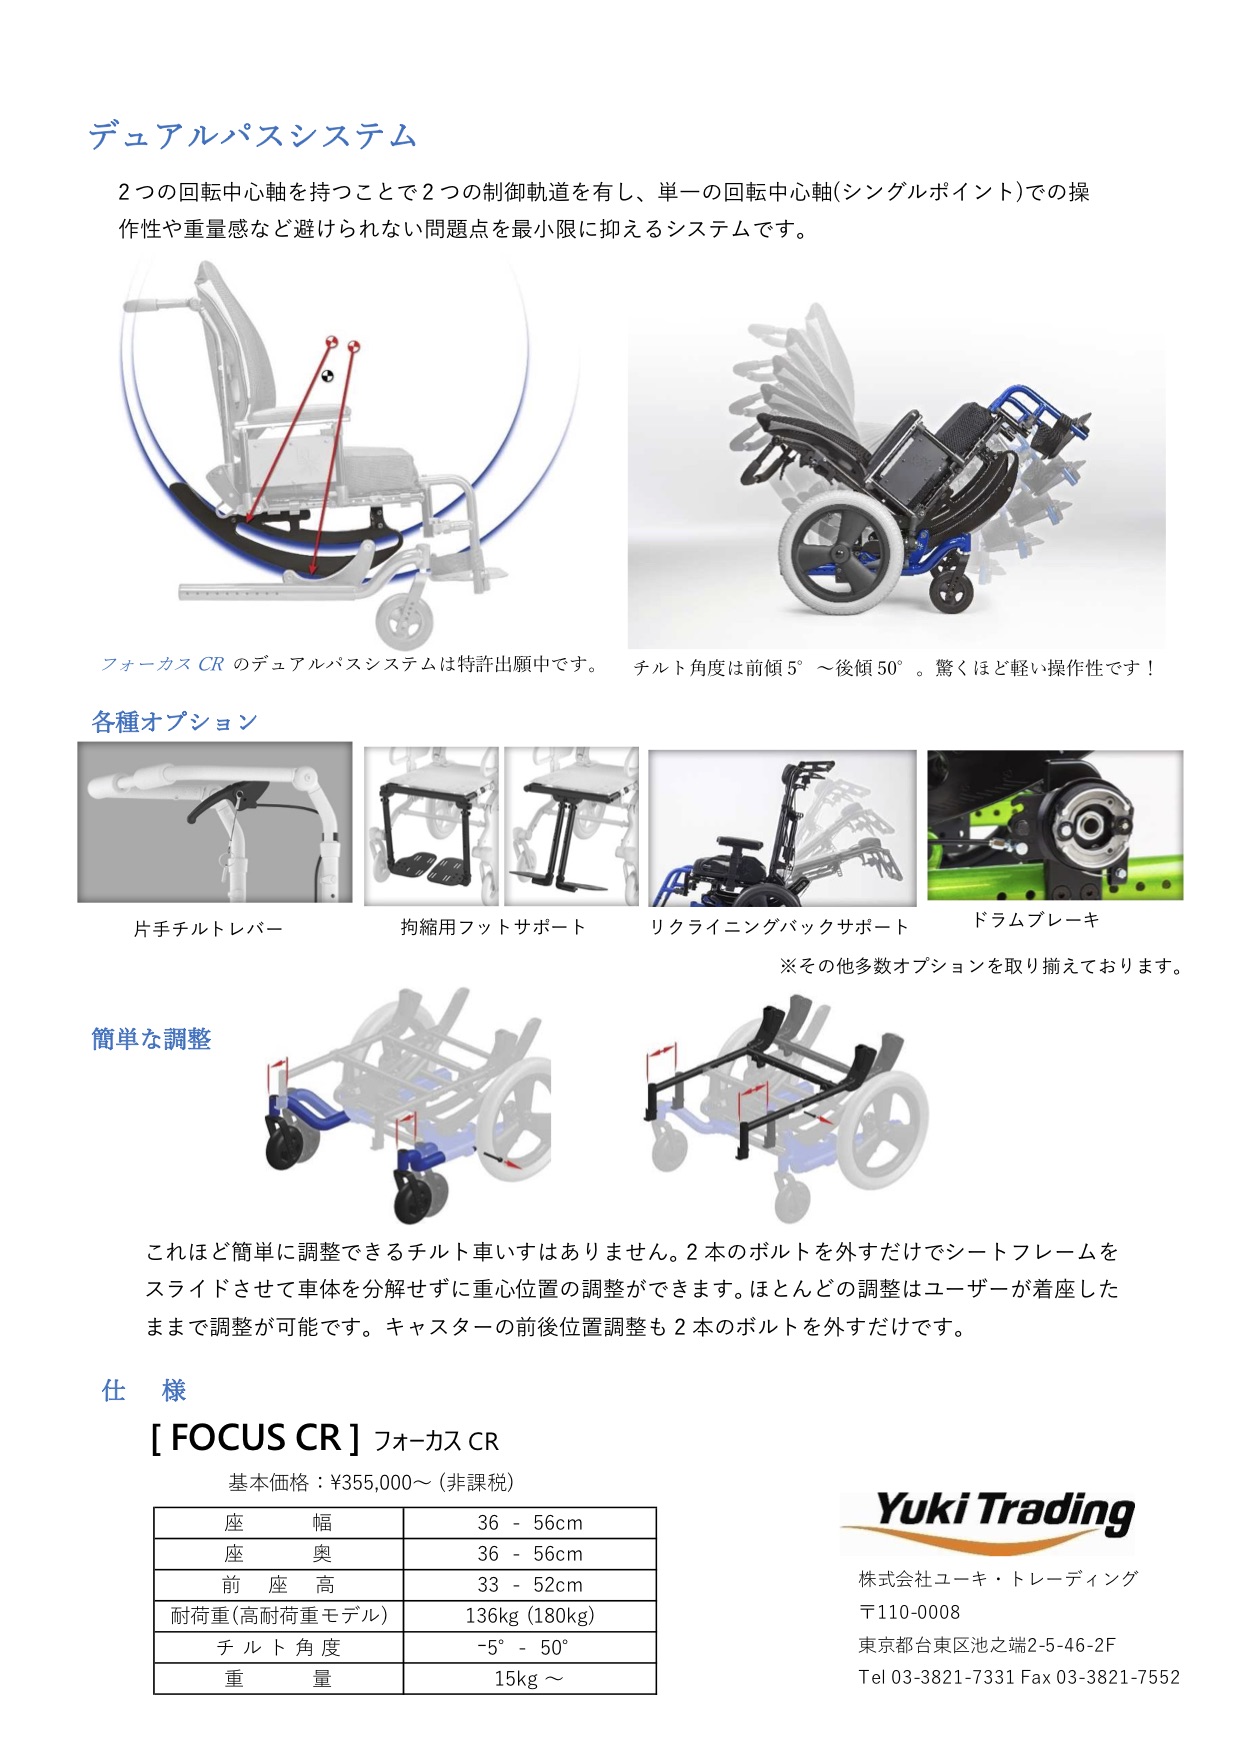 株)ユーキ・トレーディング 福祉機器展 on the WEB